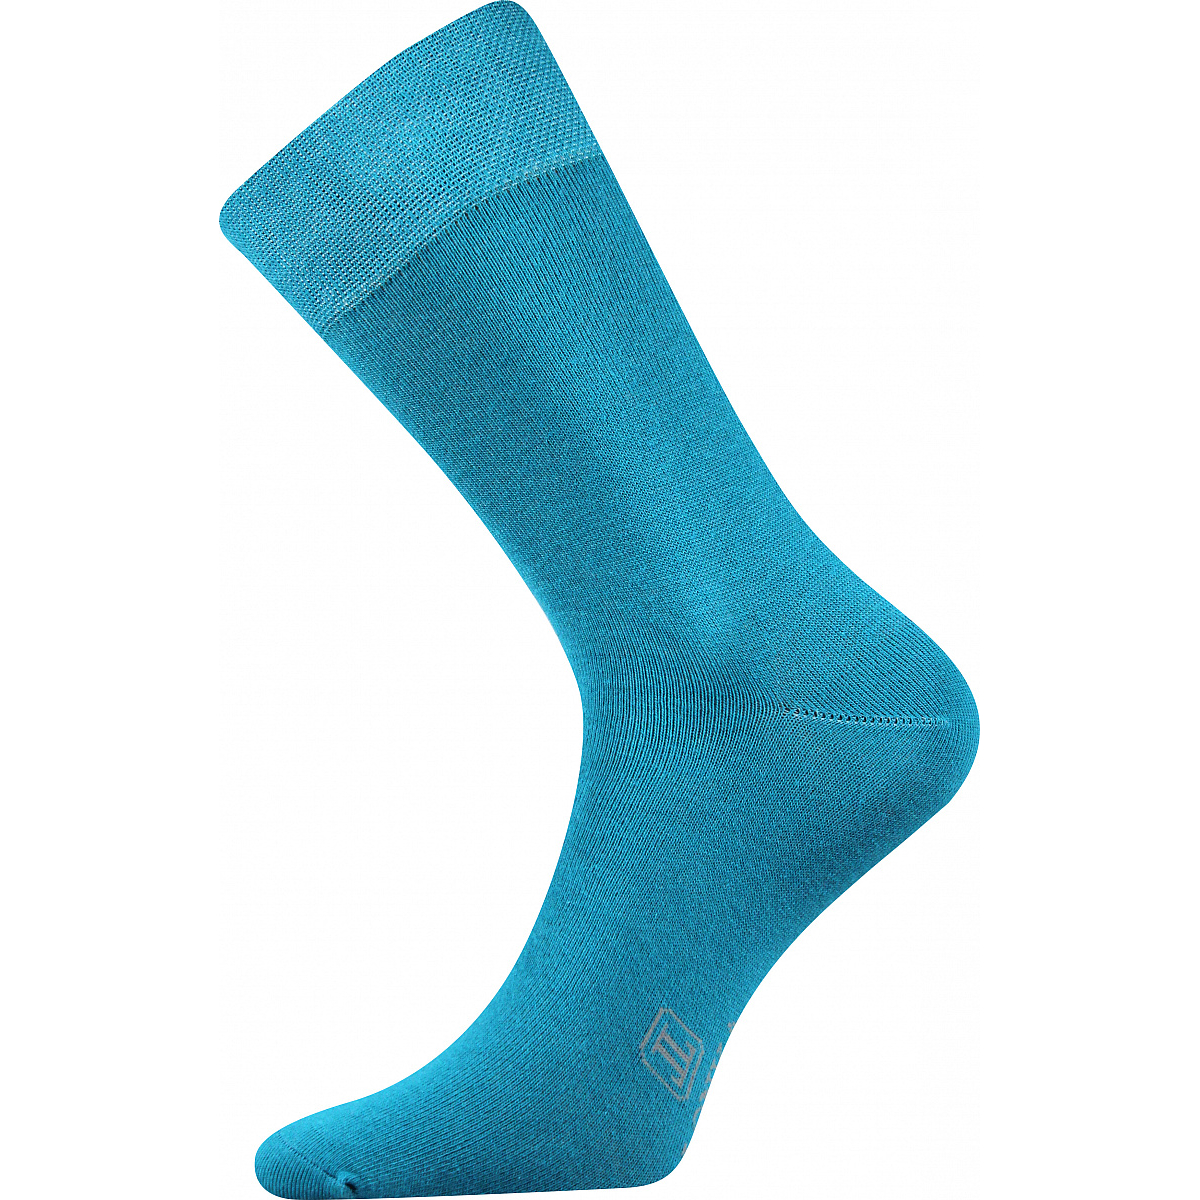 Ponožky pánské Lonka Decolor - tyrkysové, 43-46